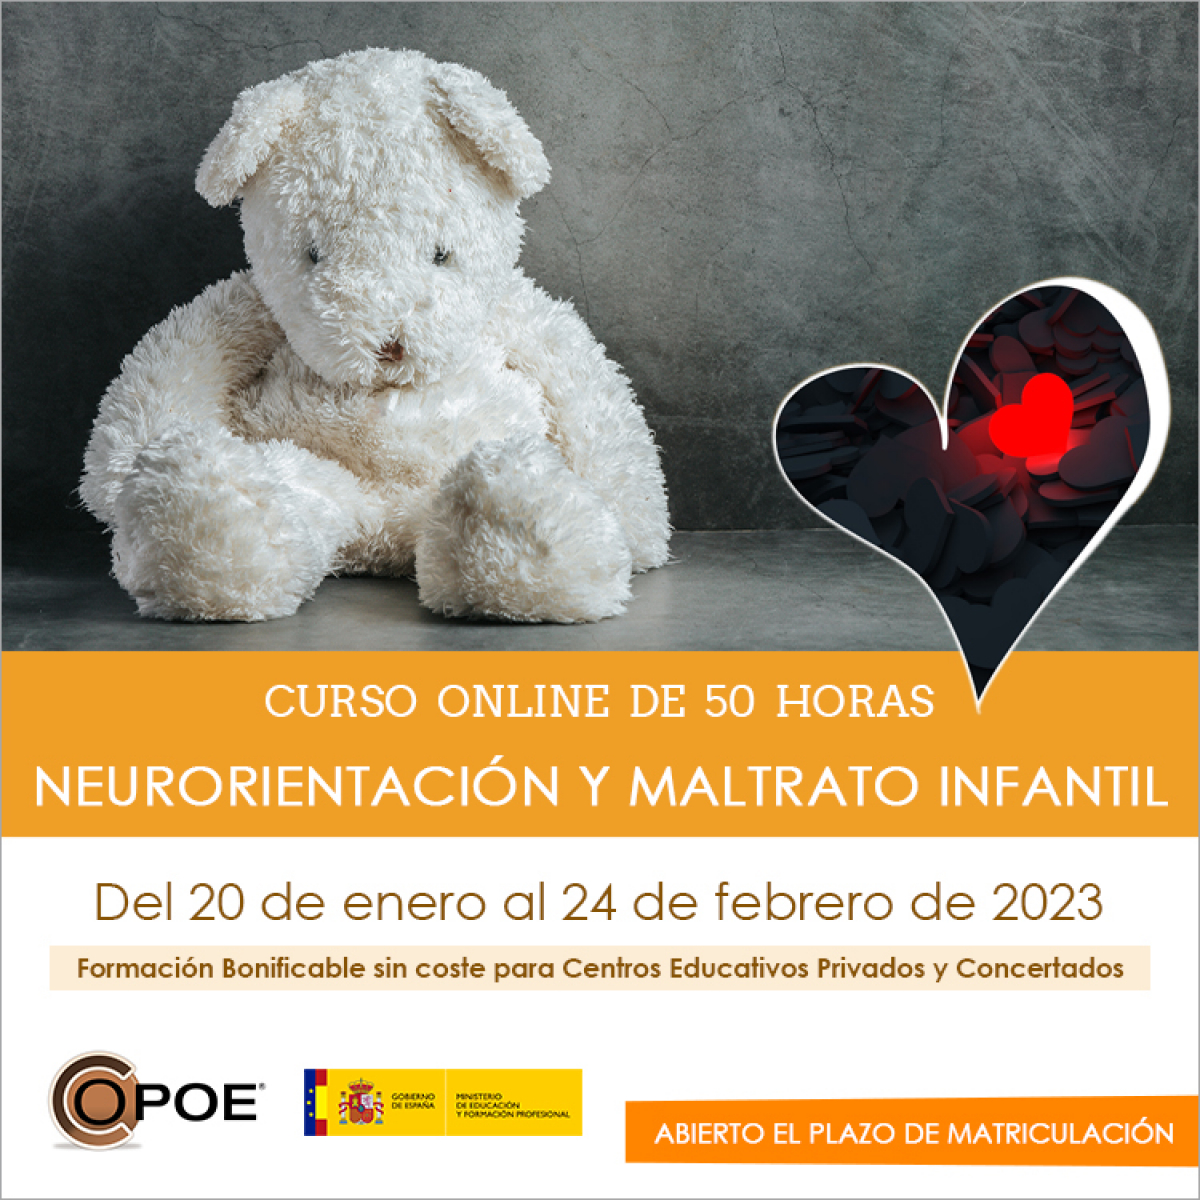 Curso online de COPOE &quot;Neurorientación y maltrato infantil”, del 18 de enero al 22 de febrero de 2023